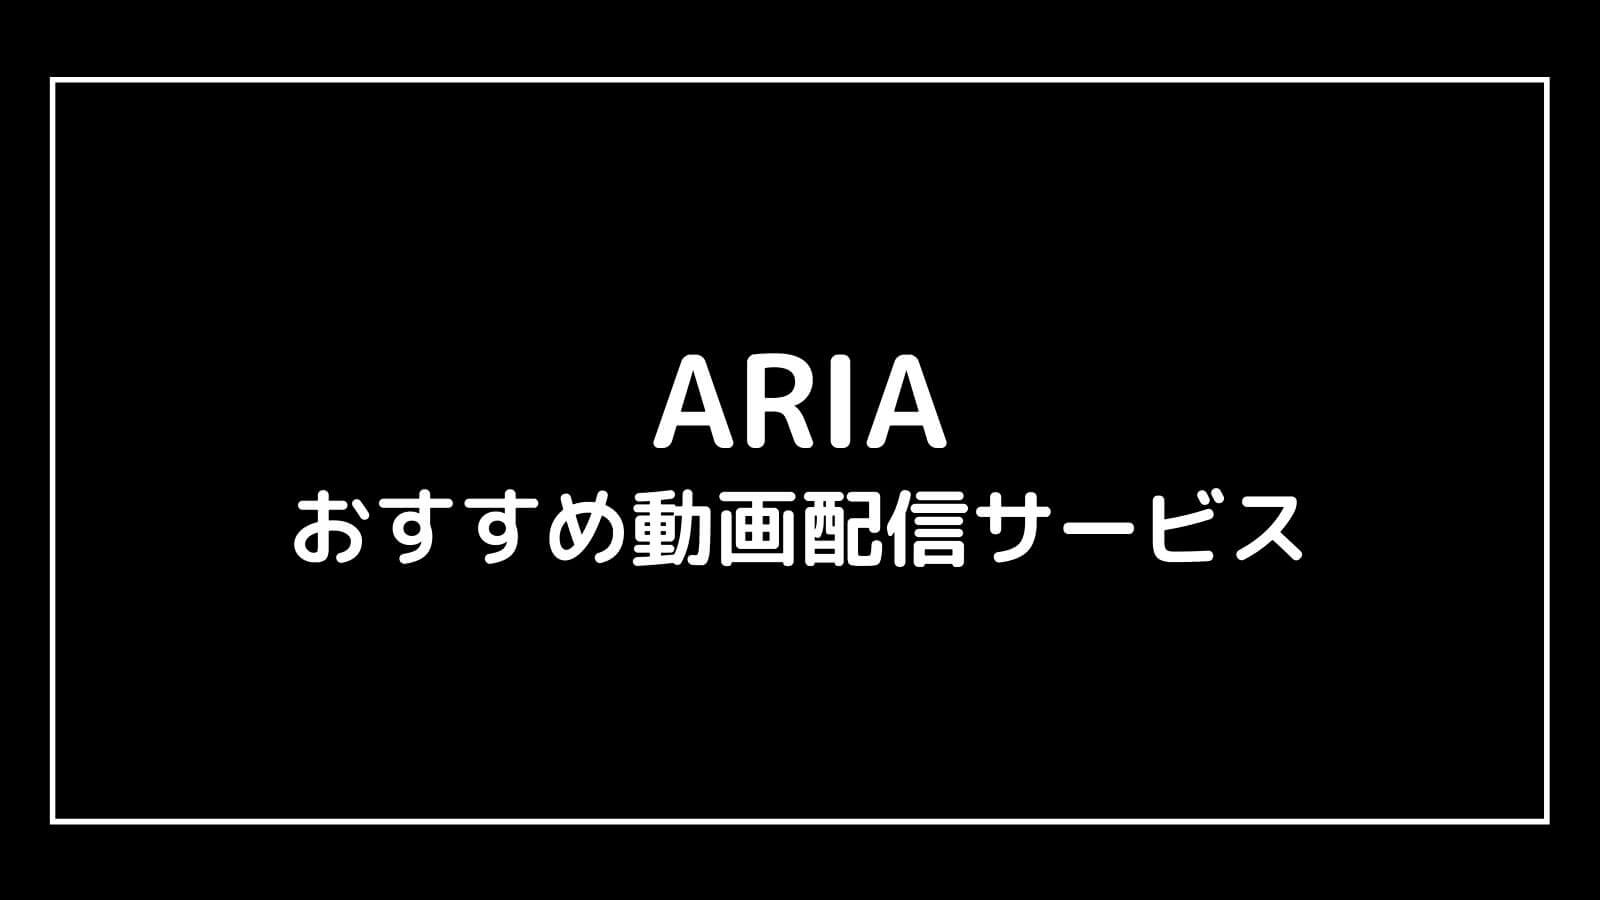 アニメ映画『ARIA』シリーズを全作品無料で視聴できる動画配信サービス